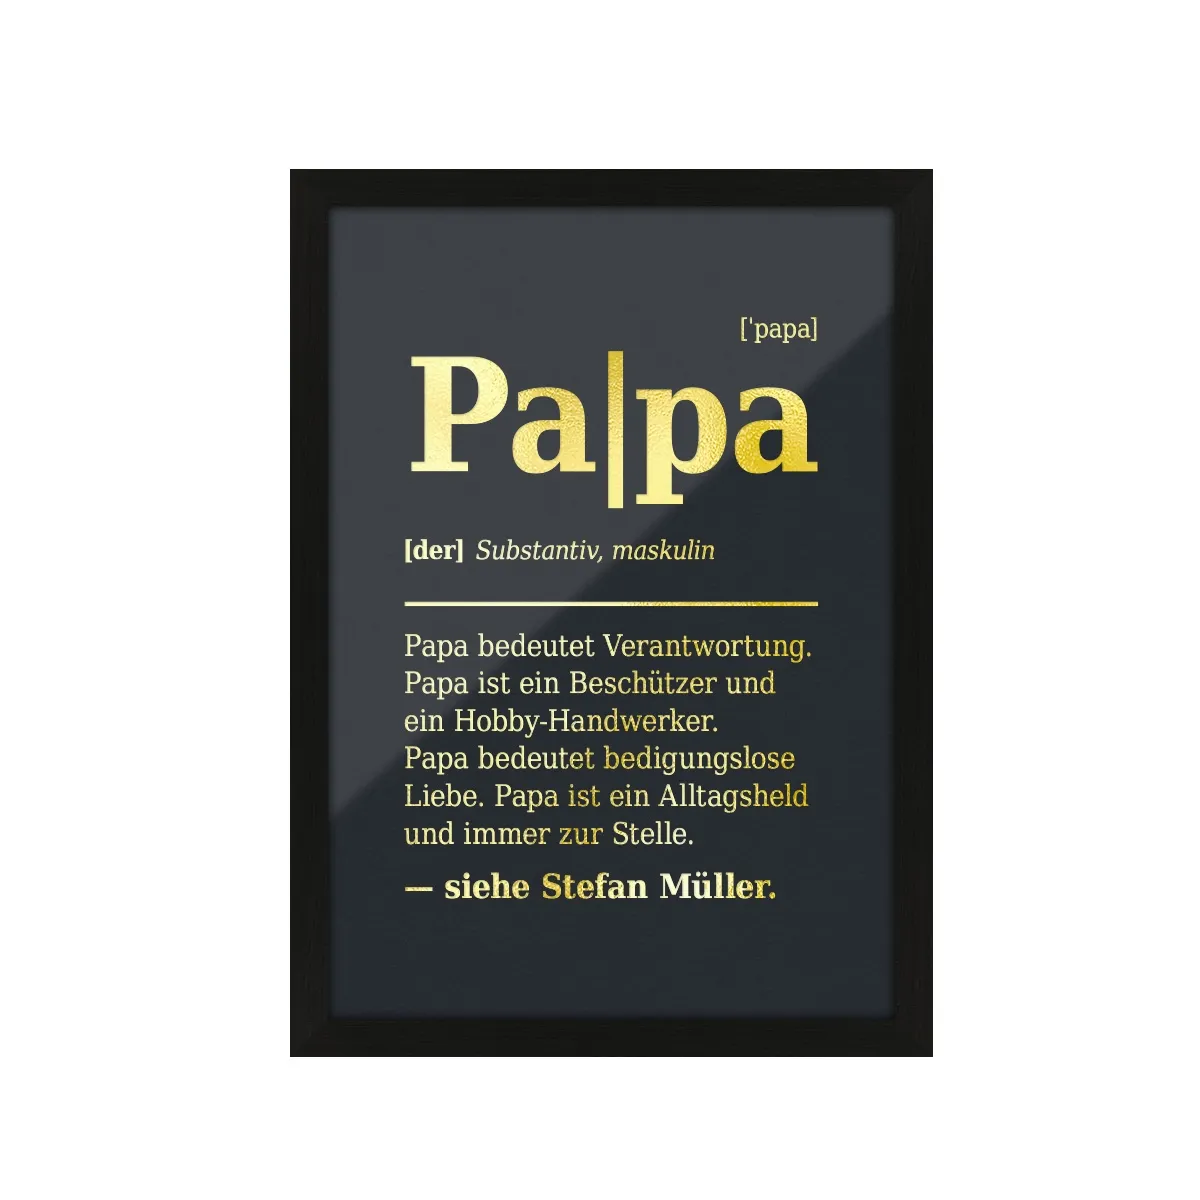 Personalisiertes Kunstdruck Poster mit Heißfolienprägung - Papa Definition